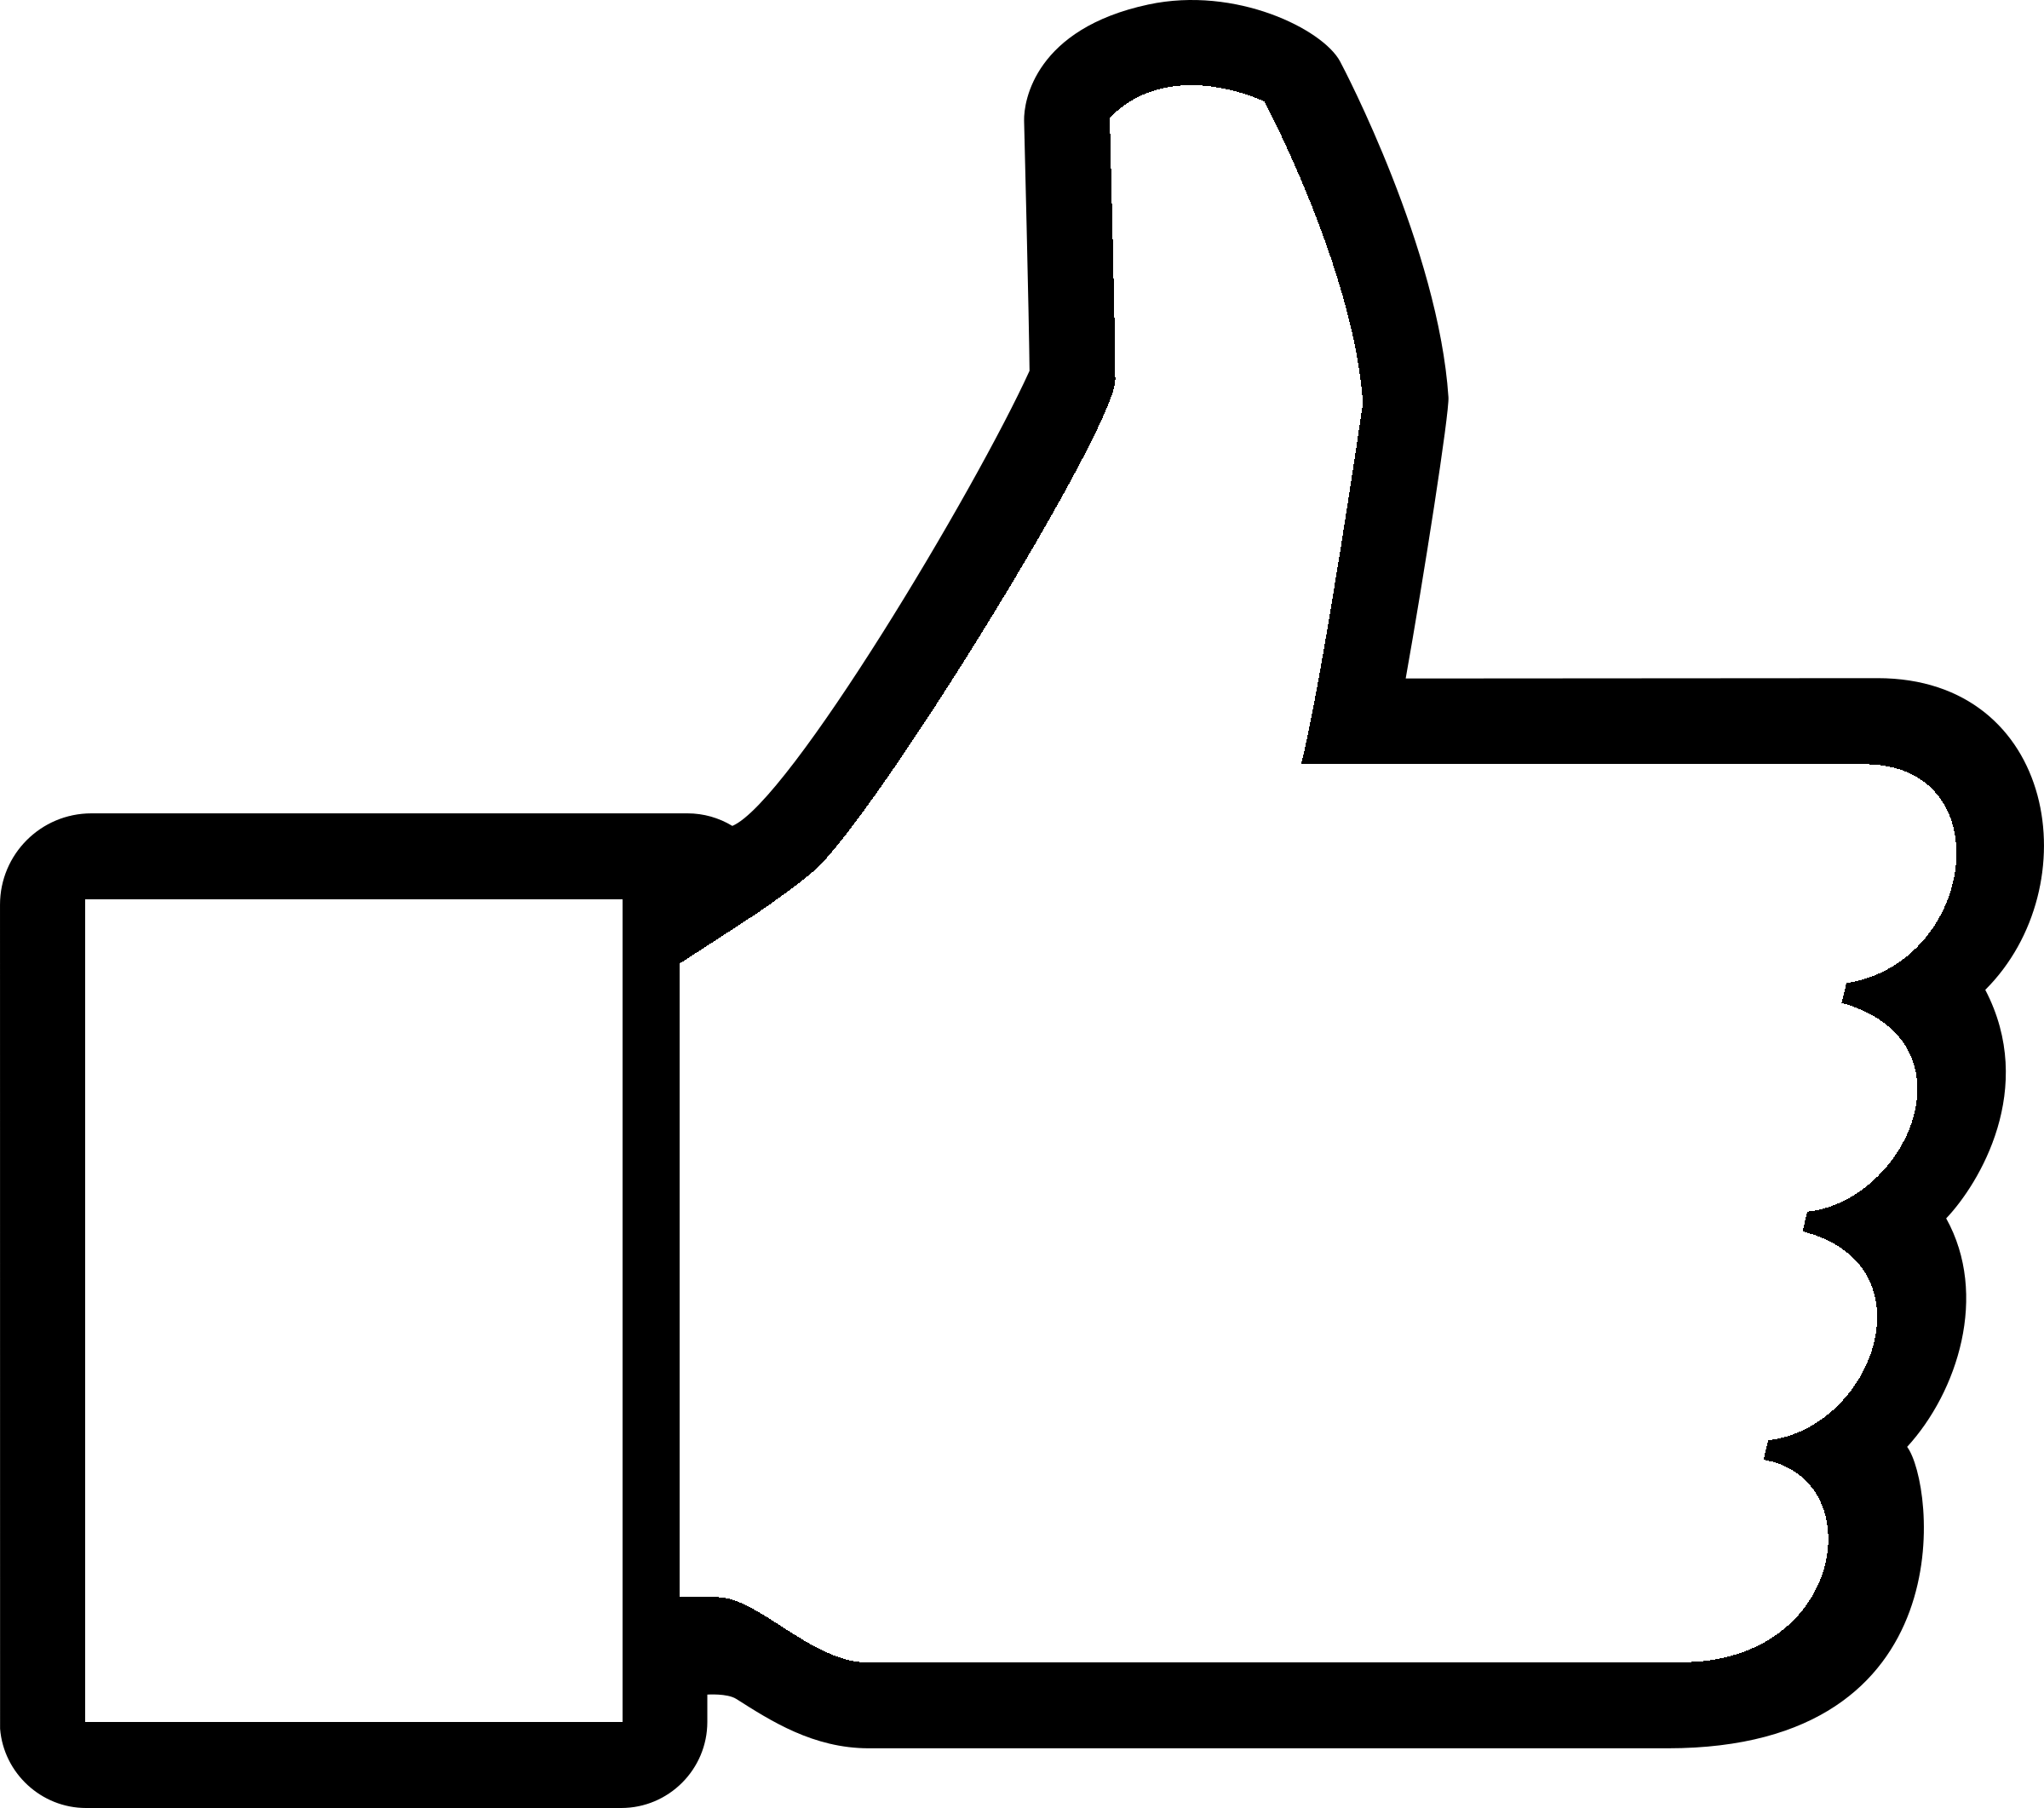 Vecteur Facebook Logo Black and White Télécharger limage PNG Transparente